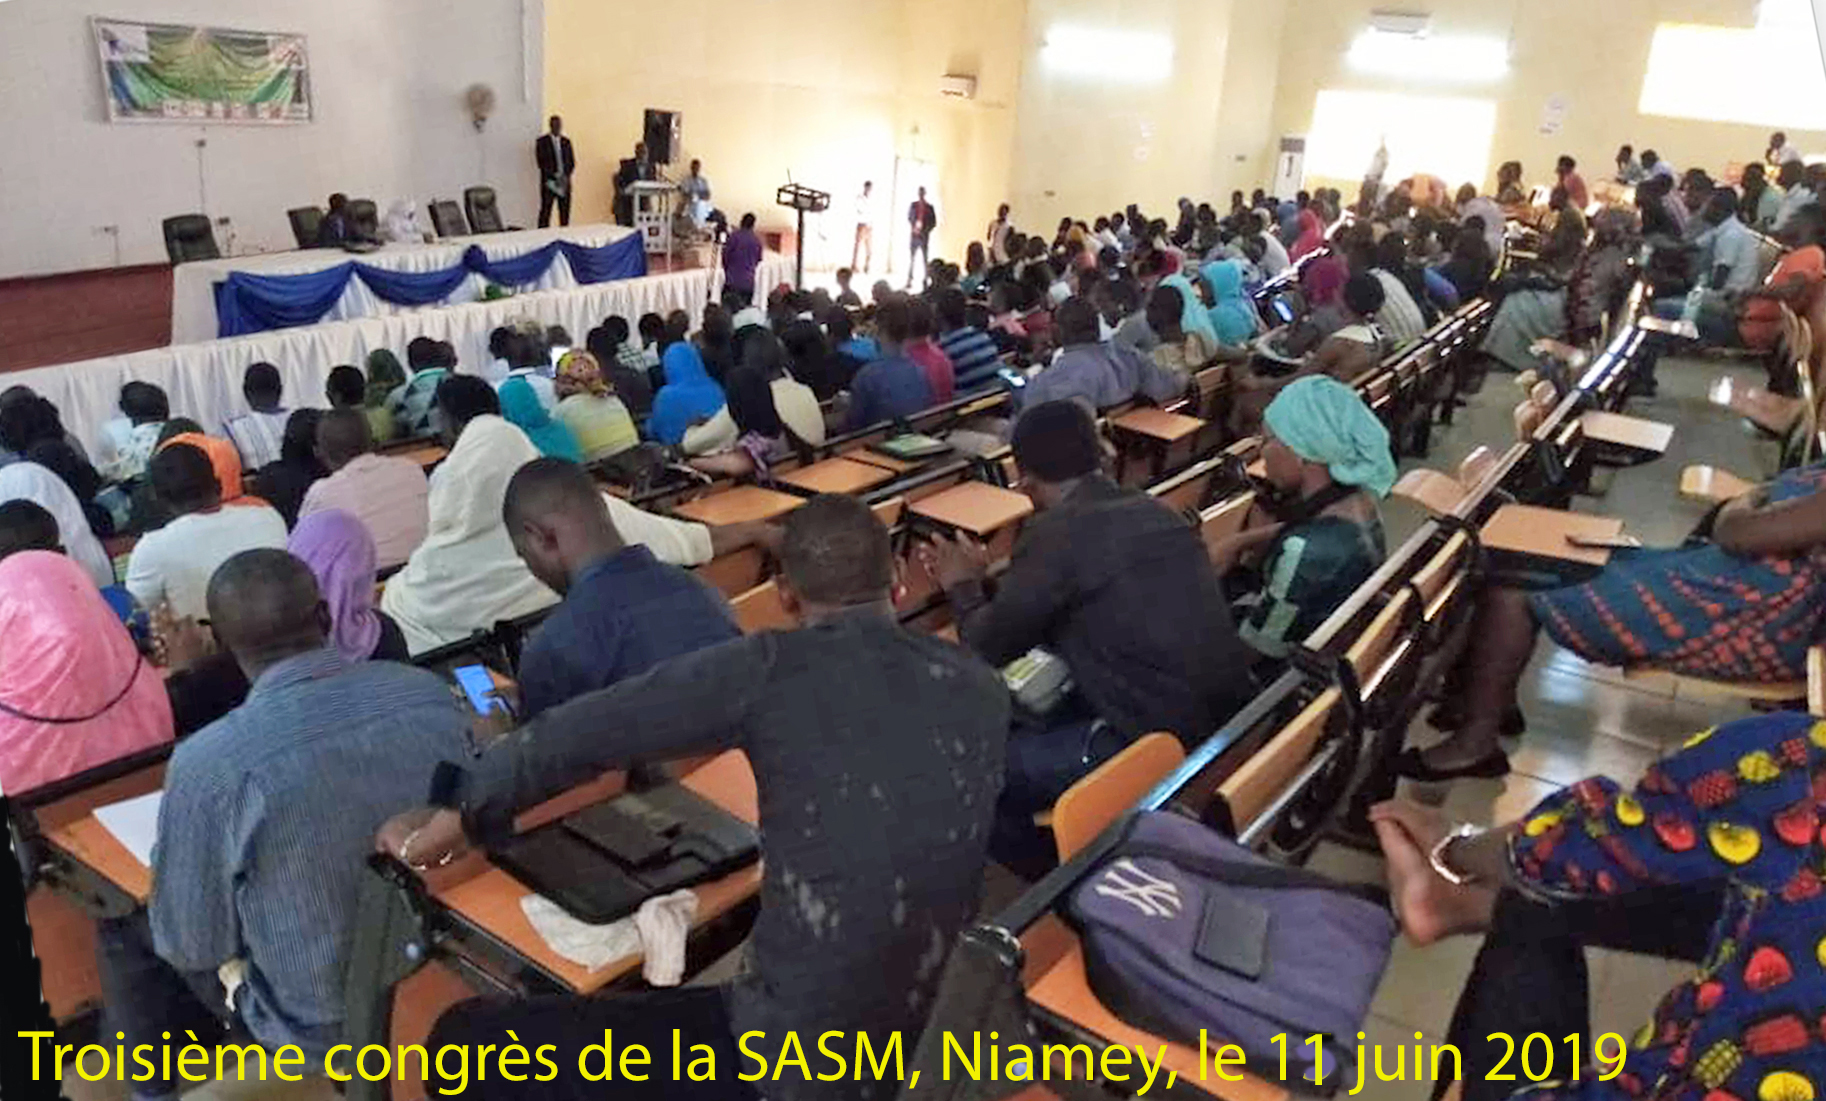 Le troisième congrès de la SASM à Niamey, du 10 au 14 juin 2019